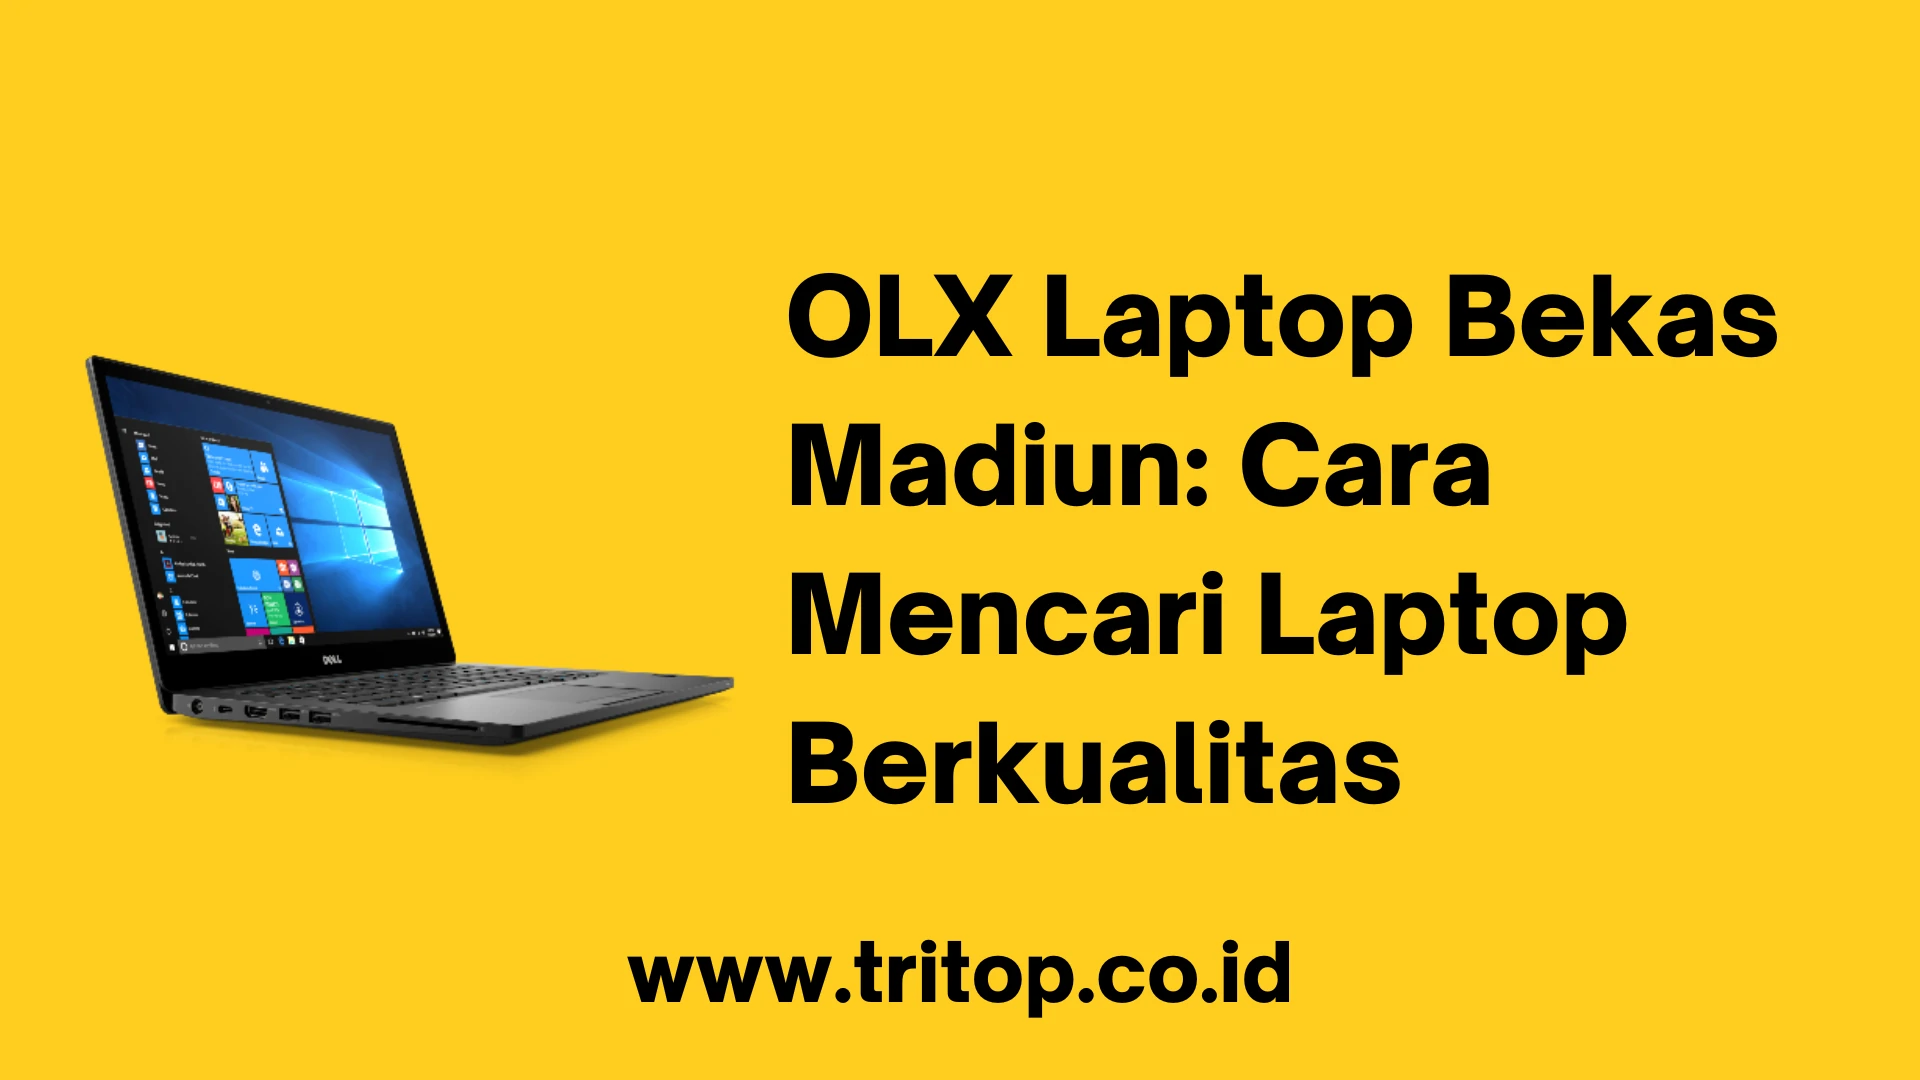 OLX Laptop Bekas Madiun